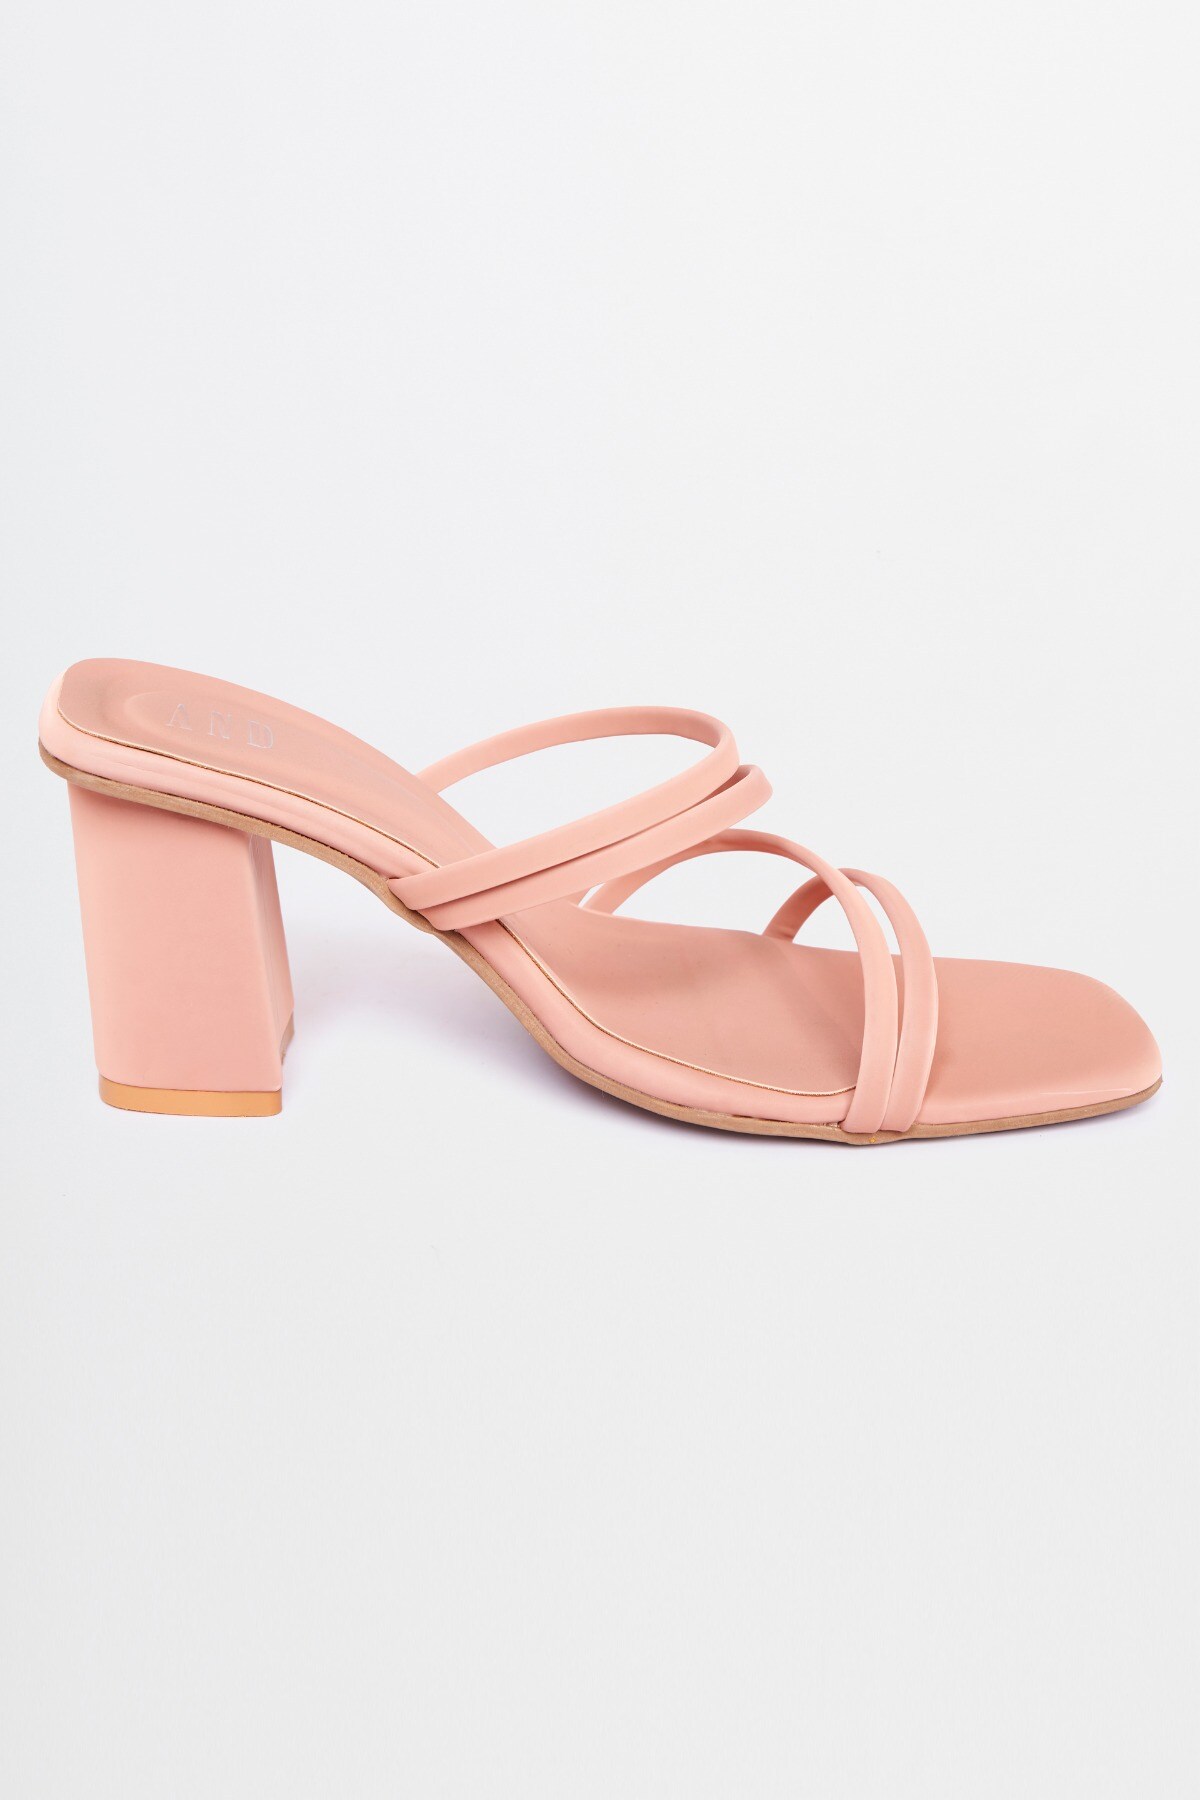 2 - Pink Sandal, image 6